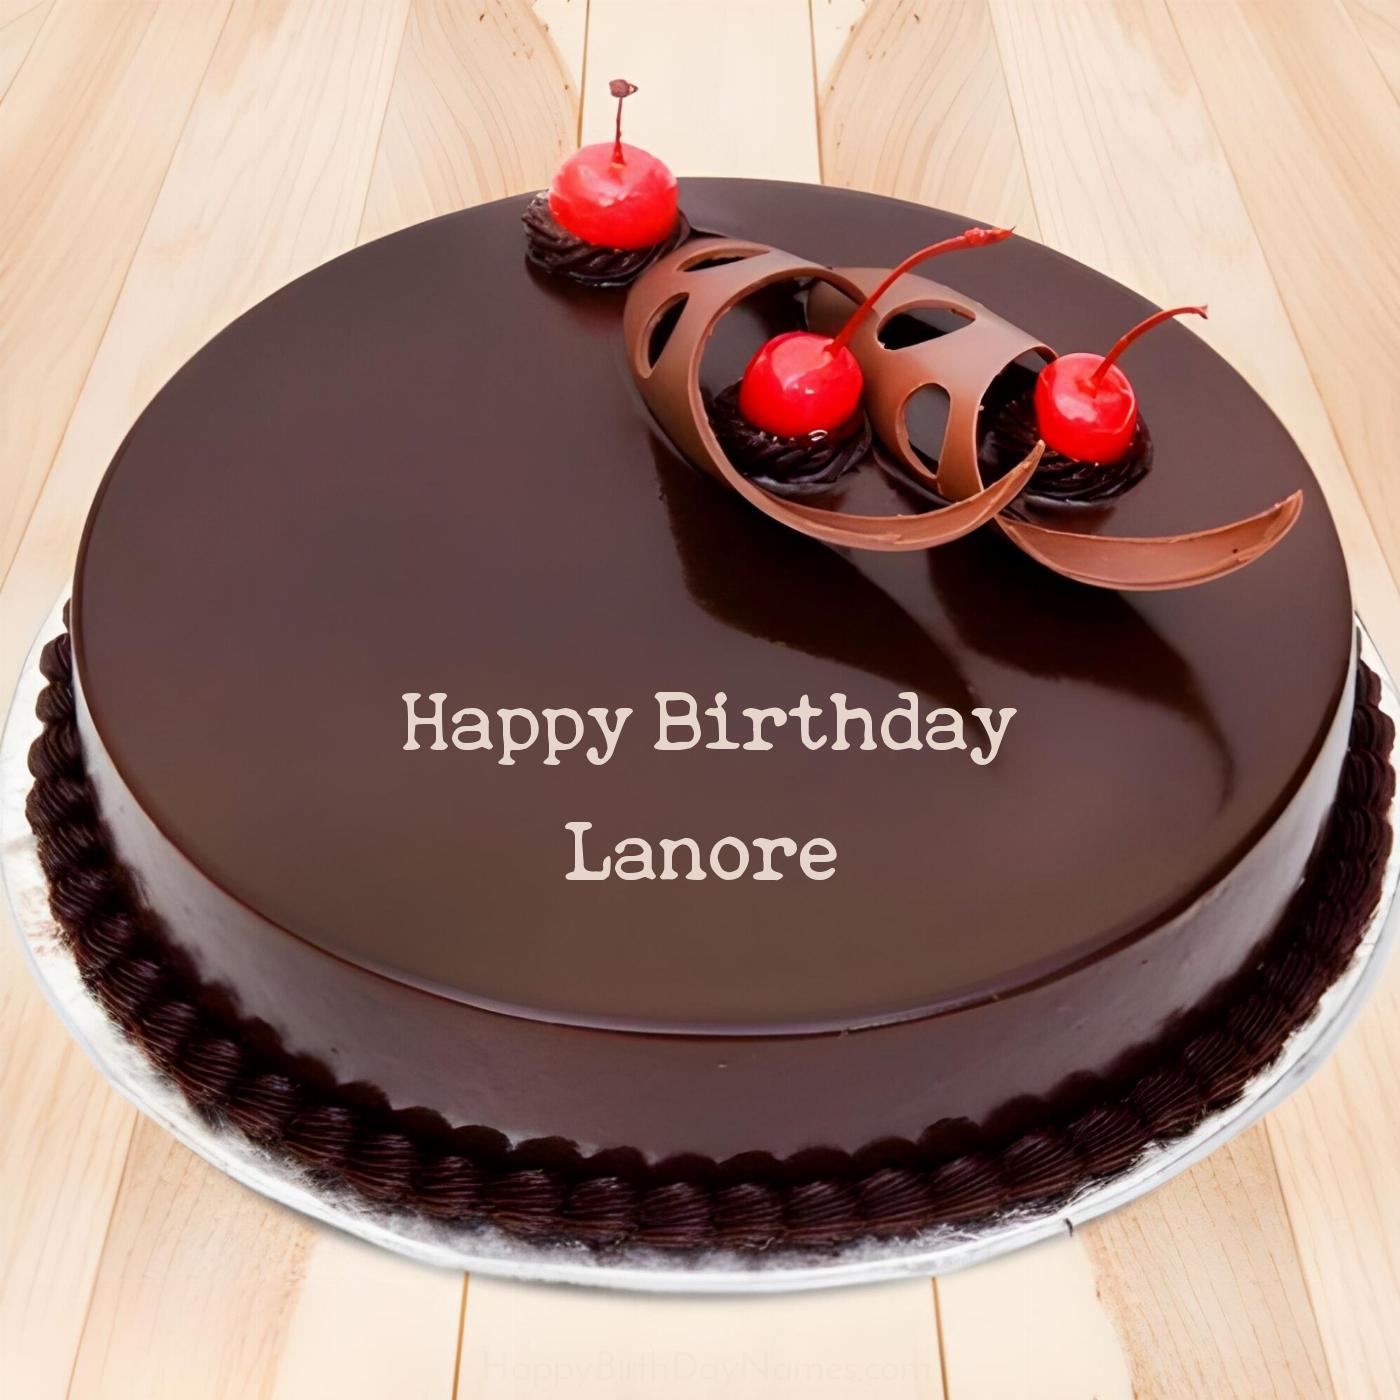 Happy Birthday Lanore Chocolate Cherry Cake